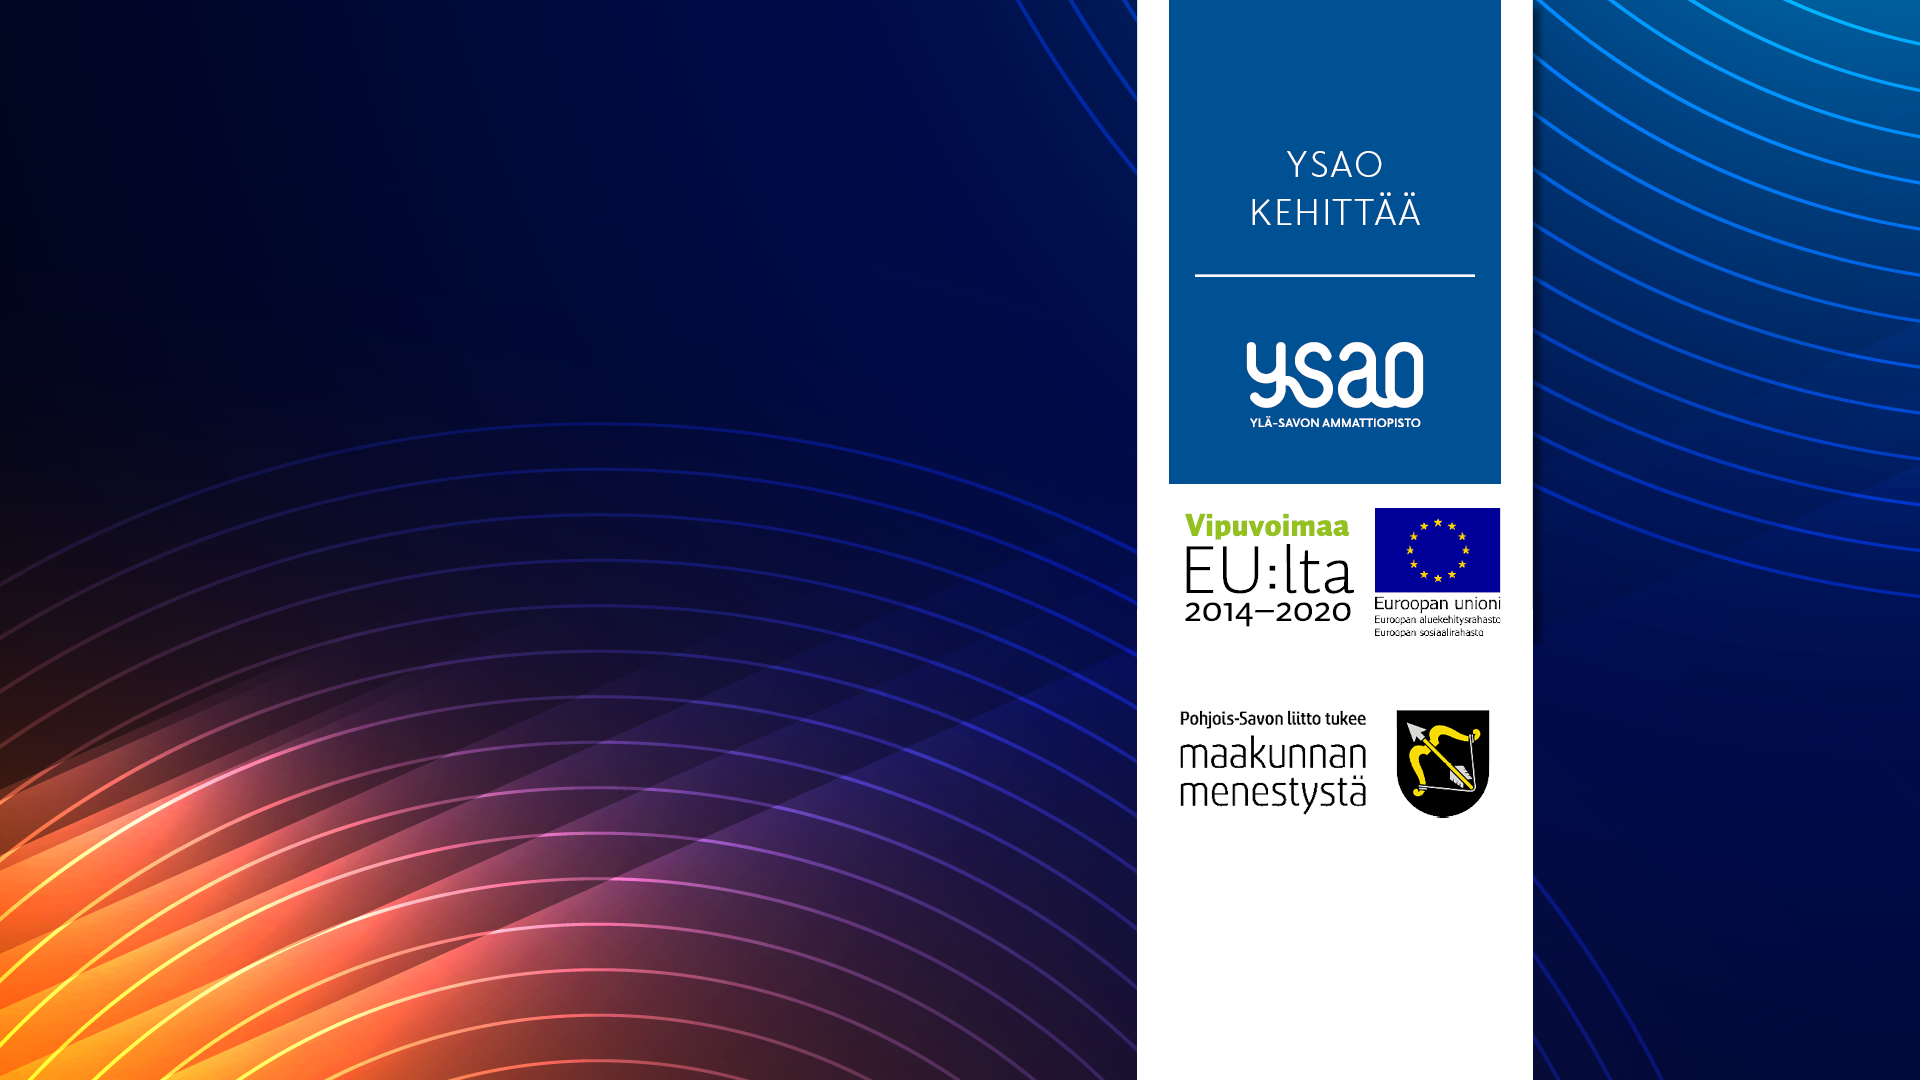 Kuvio, jonka päällä teksti YSAO kehittää sekä logot Vipuvoimaa EU:ltä ja Euroopan Unioni ja Pohjois-Savon liitto tukee maakunnan menestystä.